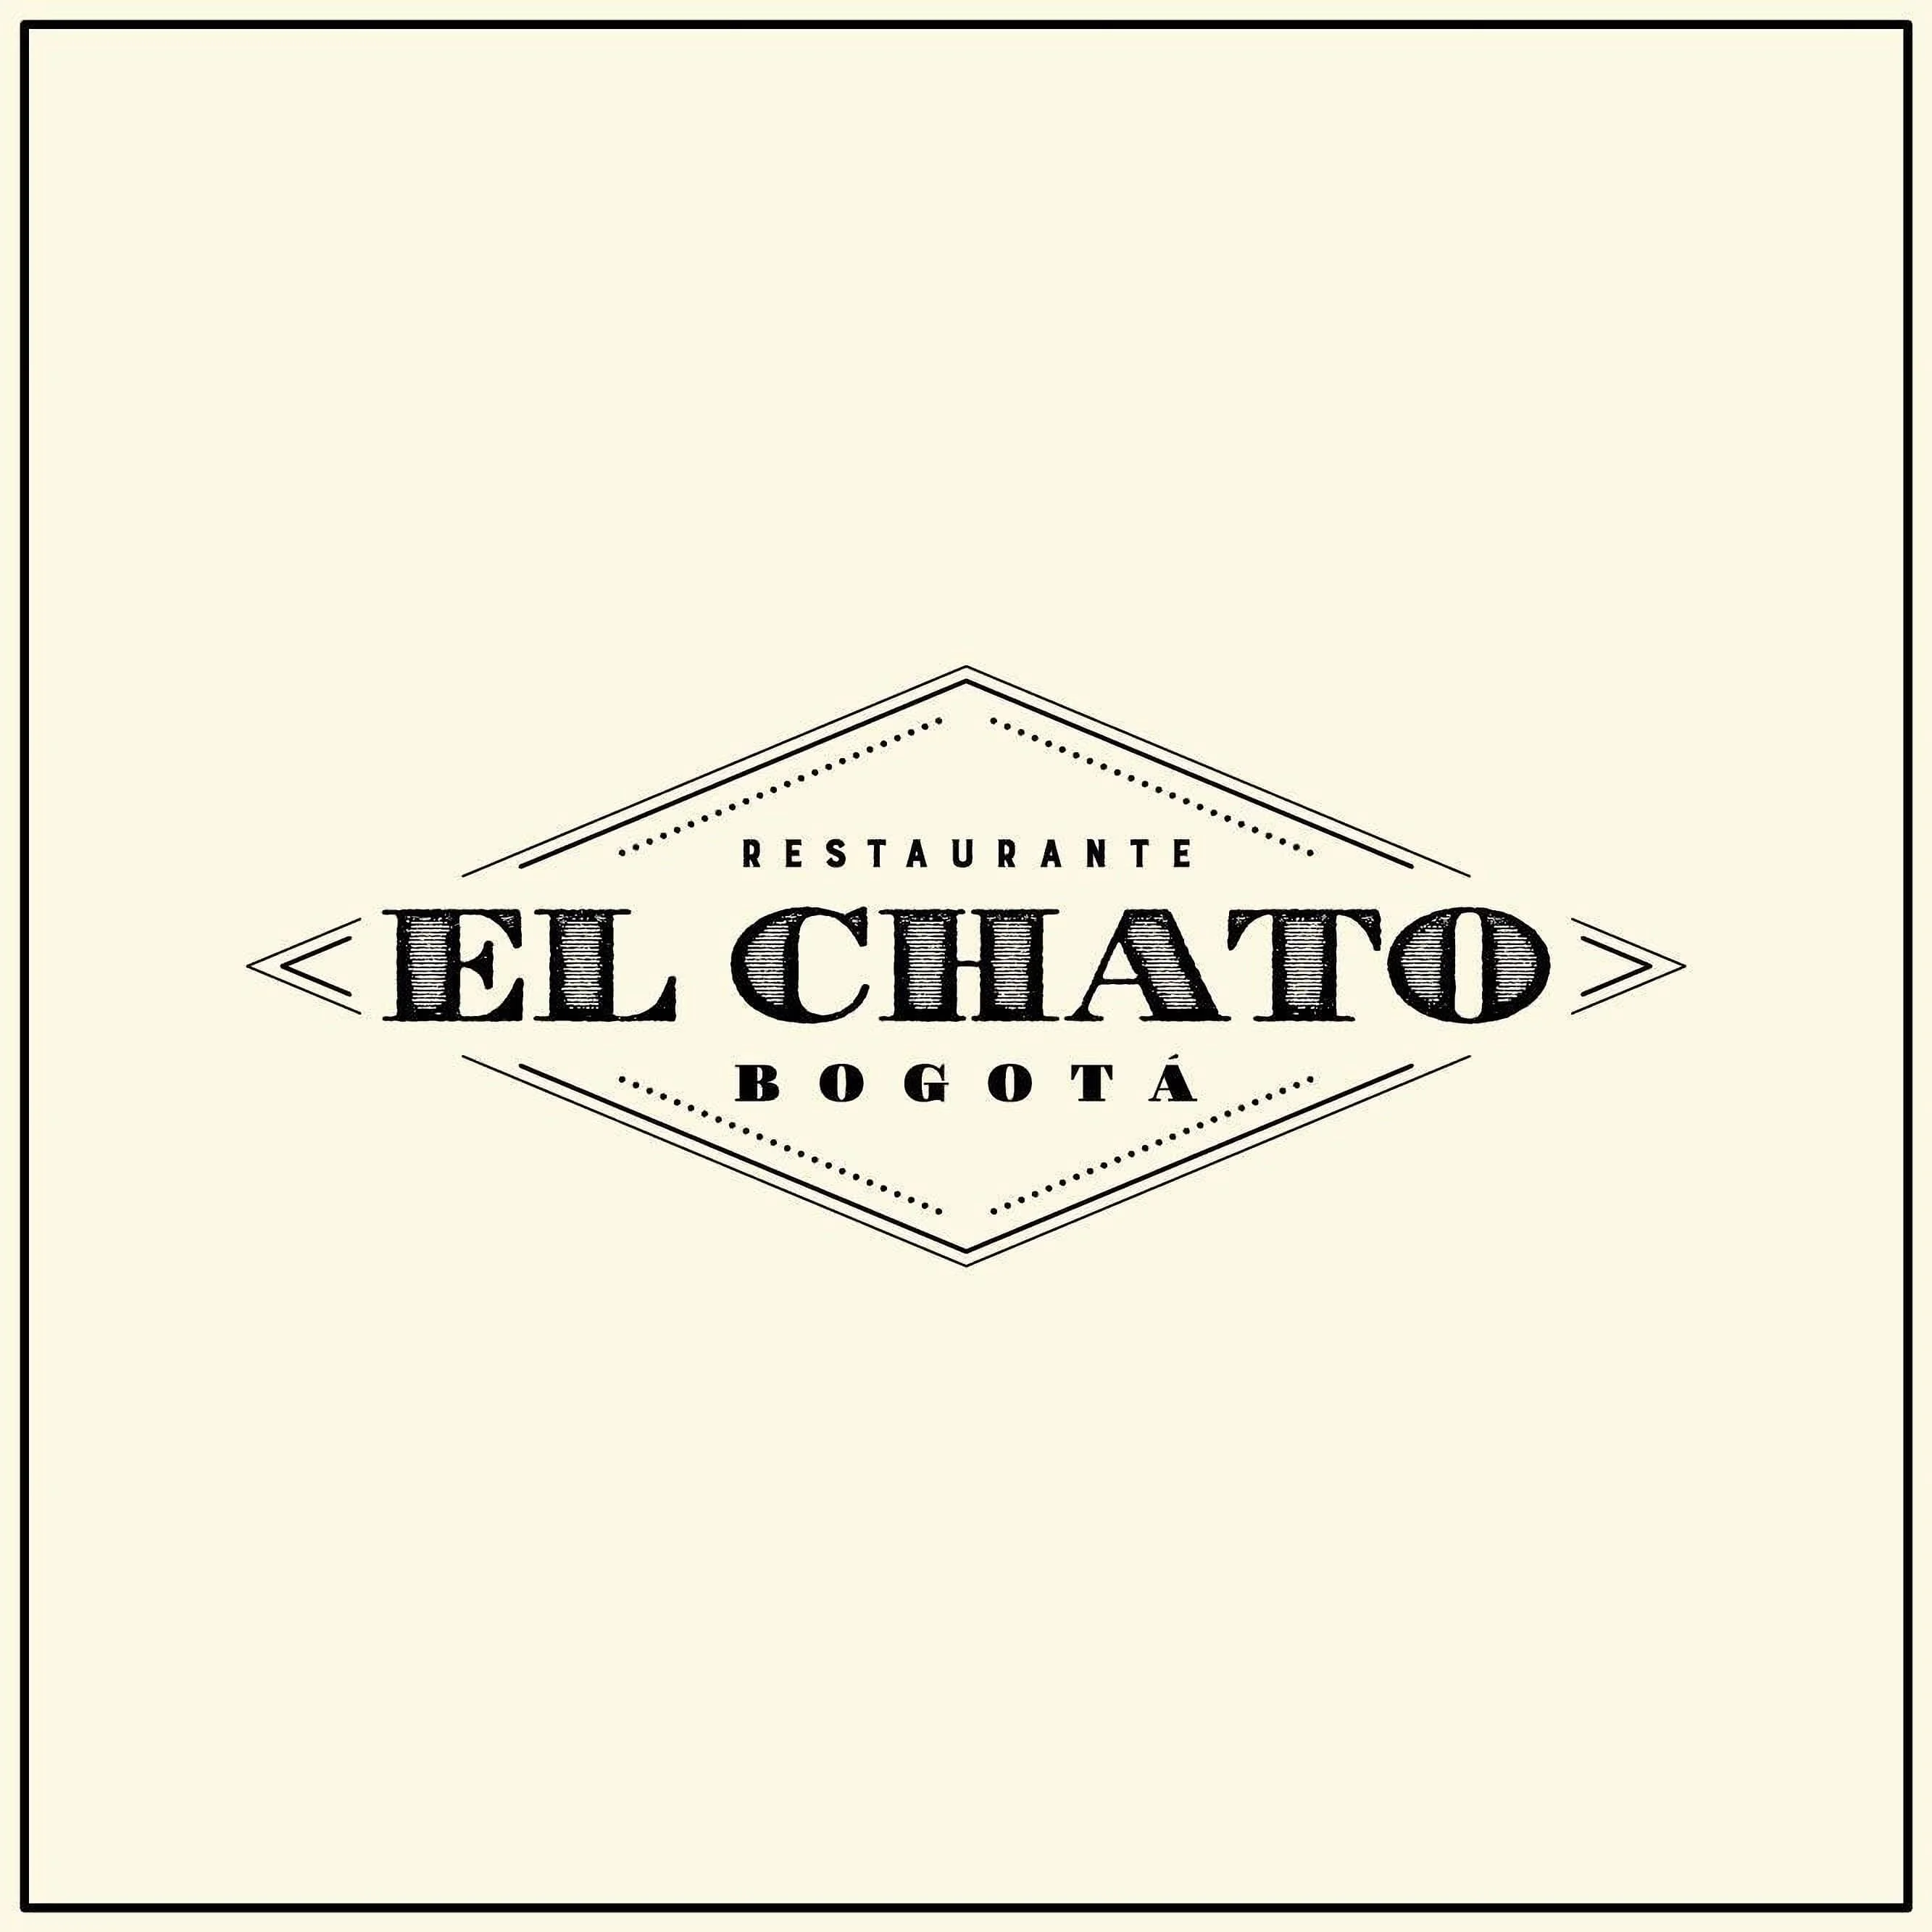 El Chato-5830